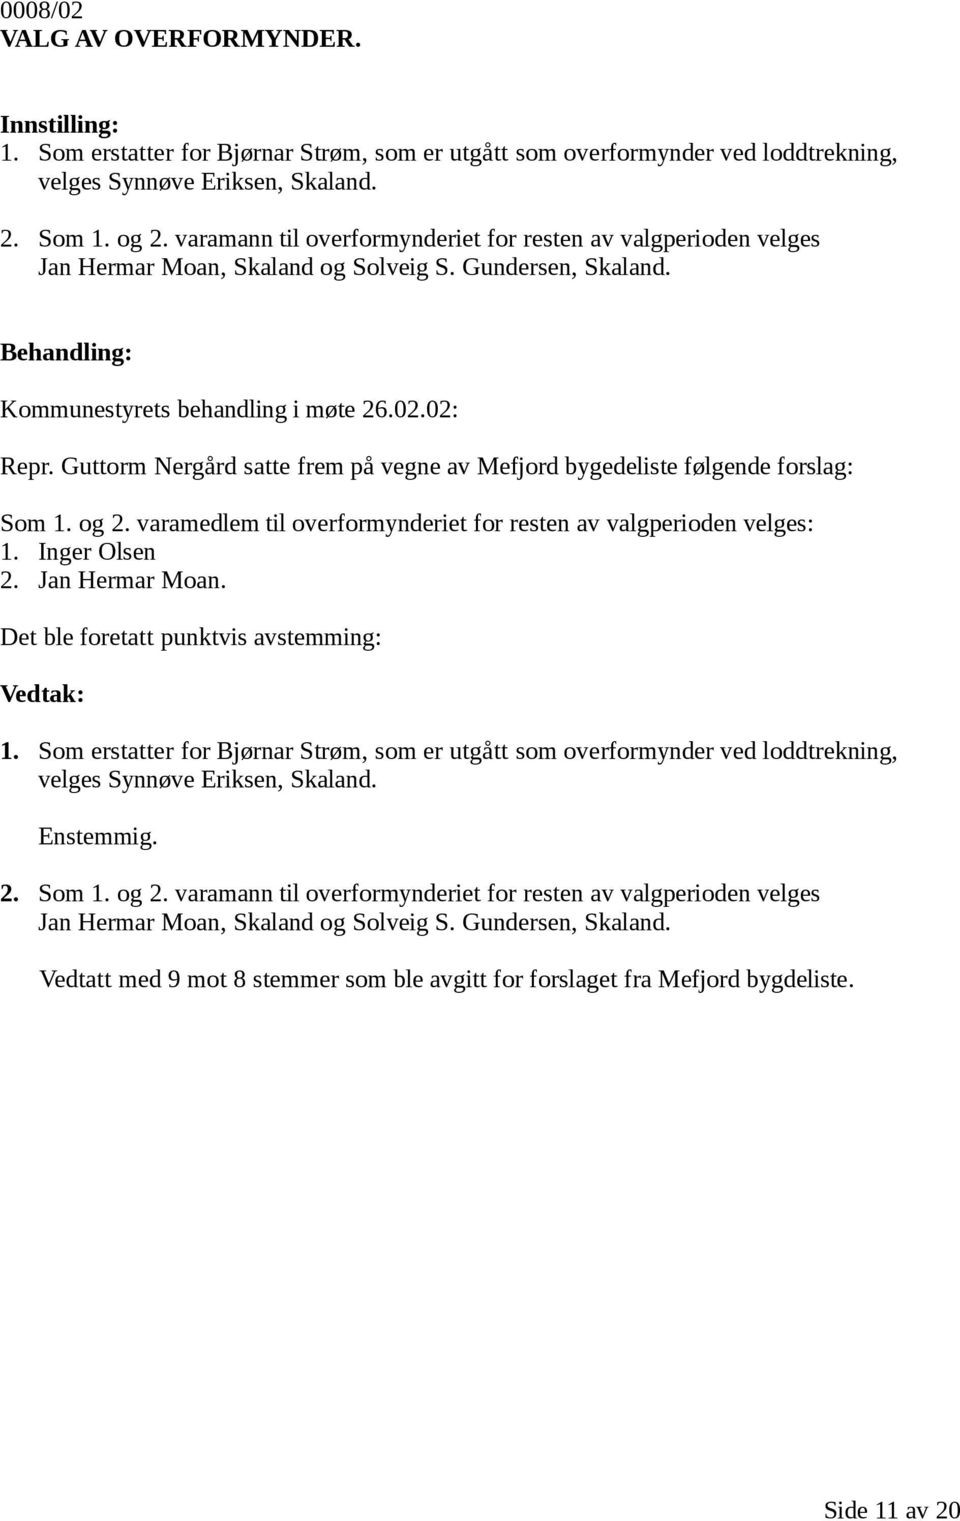 Guttorm Nergård satte frem på vegne av Mefjord bygedeliste følgende forslag: Som 1. og 2. varamedlem til overformynderiet for resten av valgperioden velges: 1. Inger Olsen 2. Jan Hermar Moan.